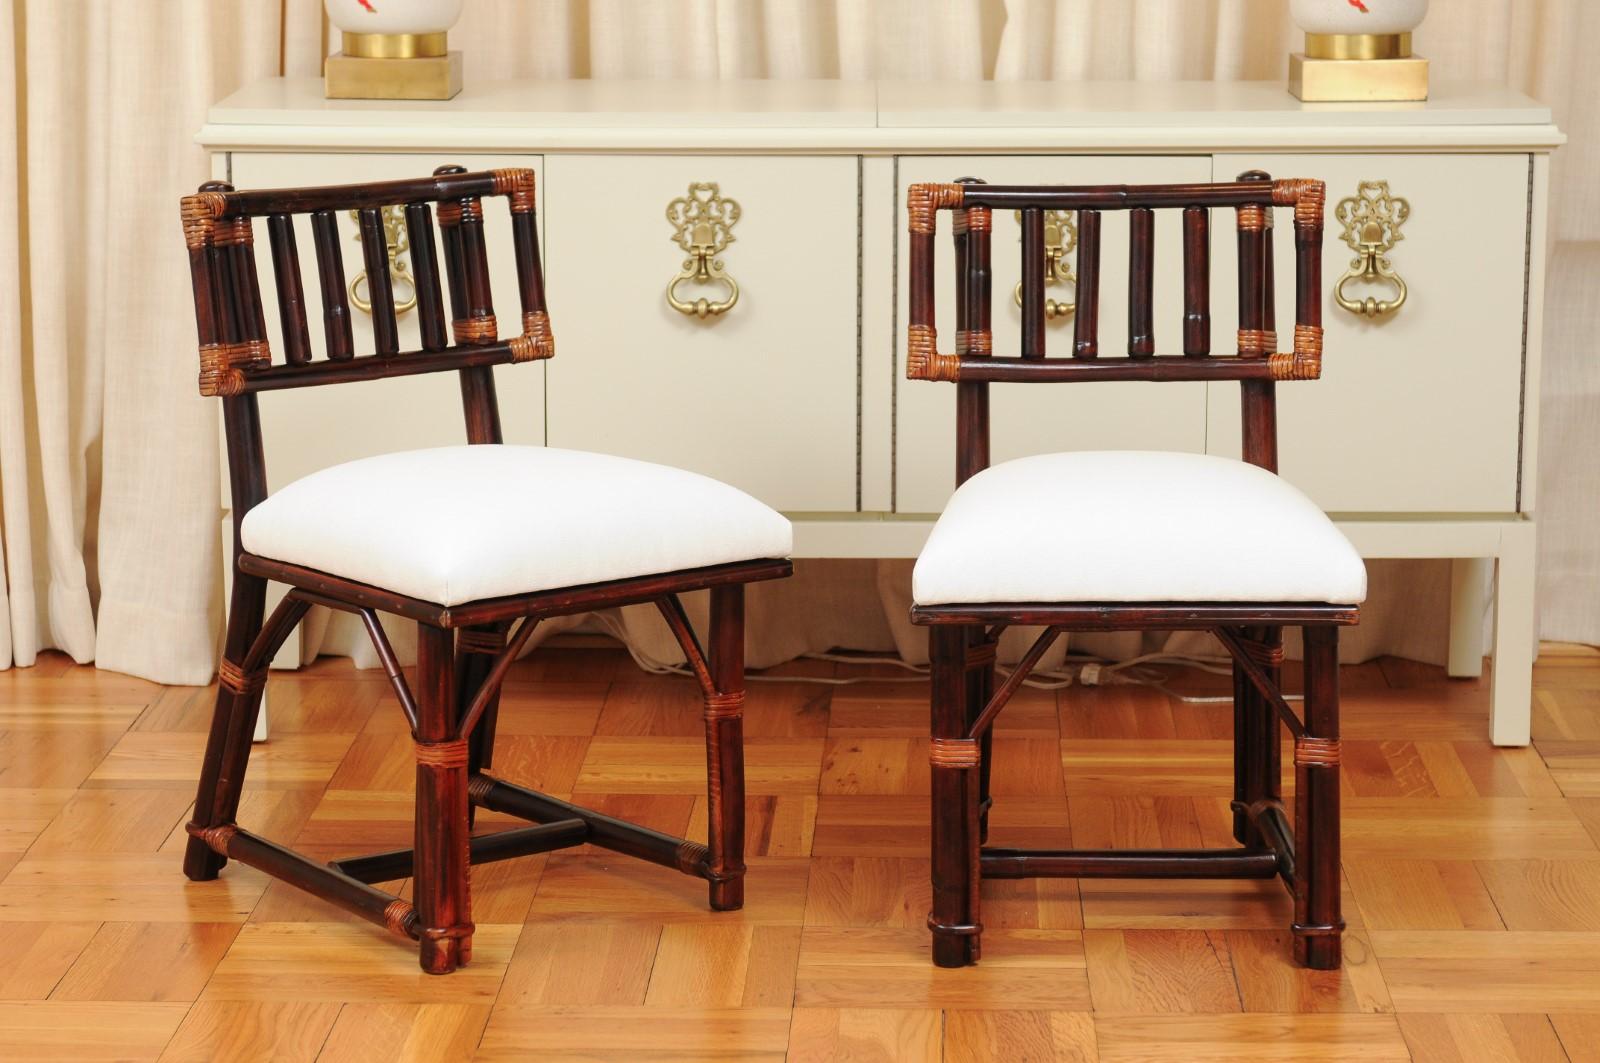 Ces magnifiques chaises de salle à manger sont expédiées telles qu'elles ont été photographiées par des professionnels et décrites dans le texte de l'annonce : Méticuleusement restaurées par des professionnels et prêtes à être installées. Un service